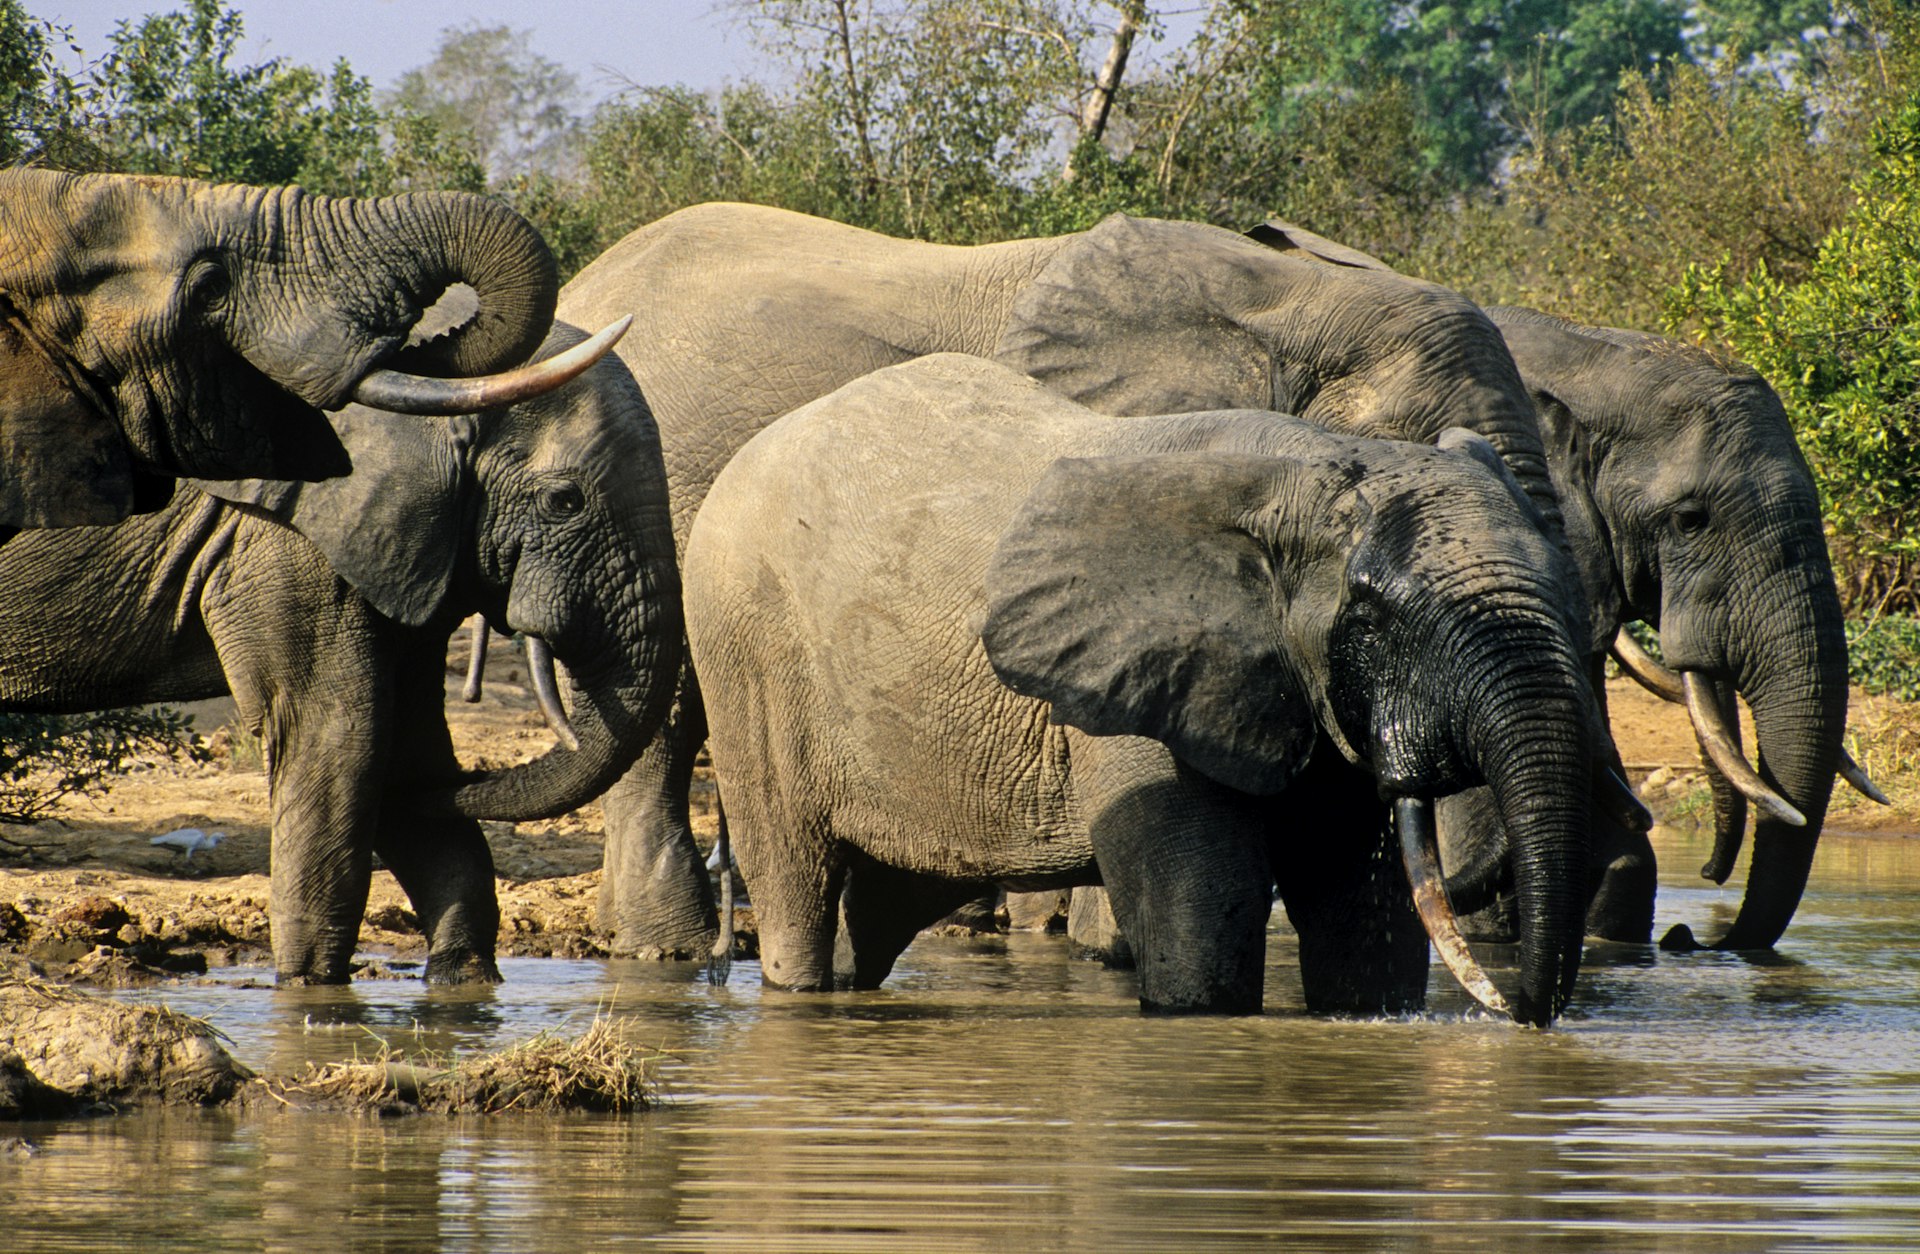 Elephants drinking at a waterhole in Mole National Park